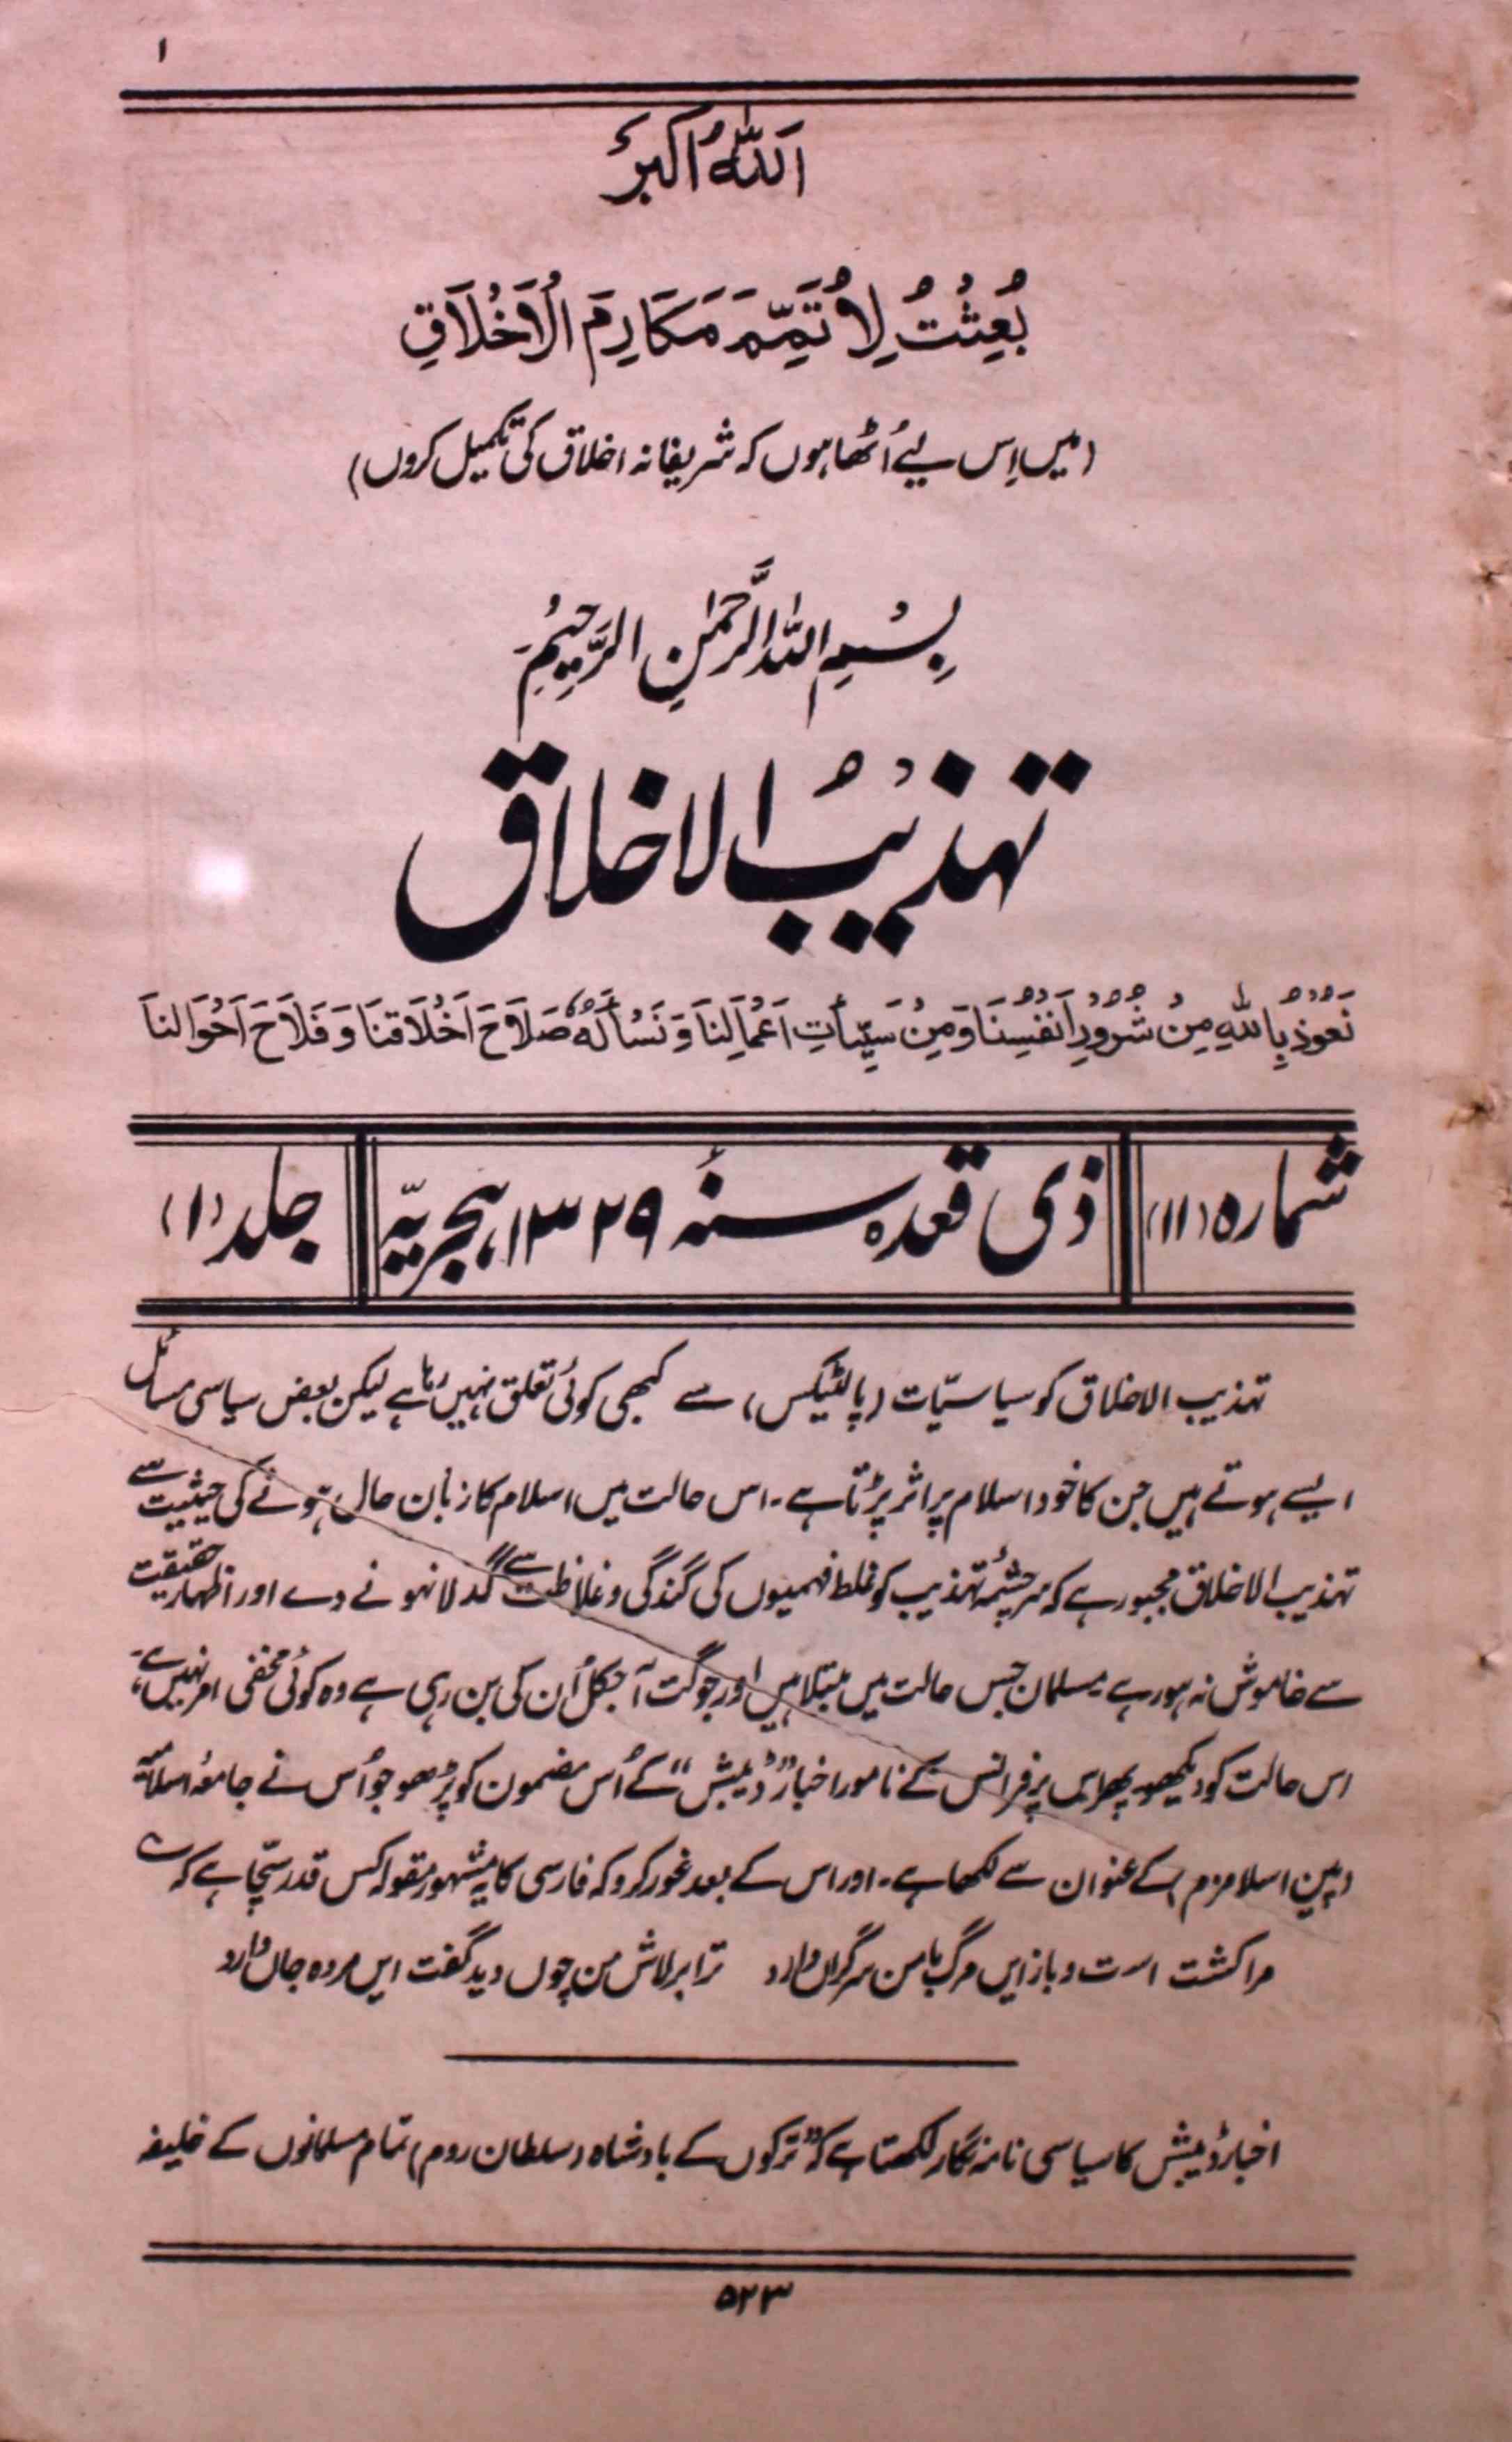 tahzibul-akhlaq-aligarh-shumara-number-011-abdullah-al-emadi-magazines-10